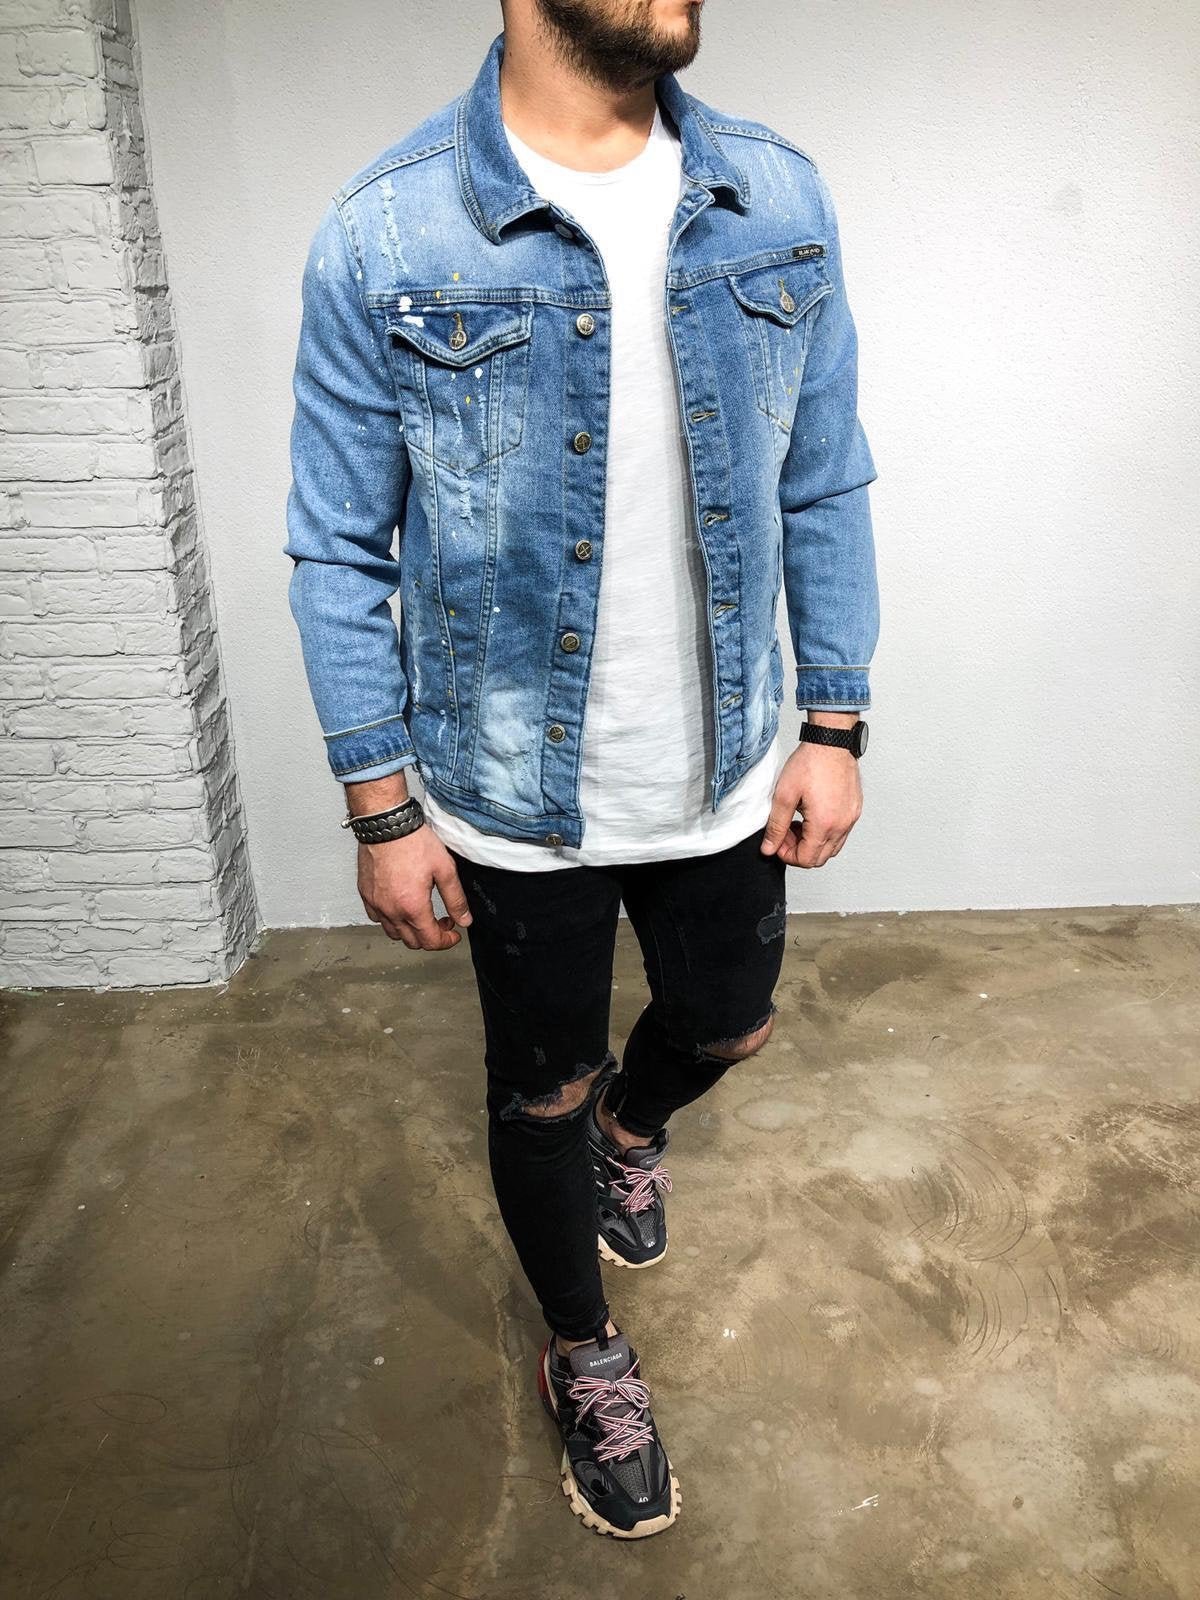 streetwear jean jacket outfits men